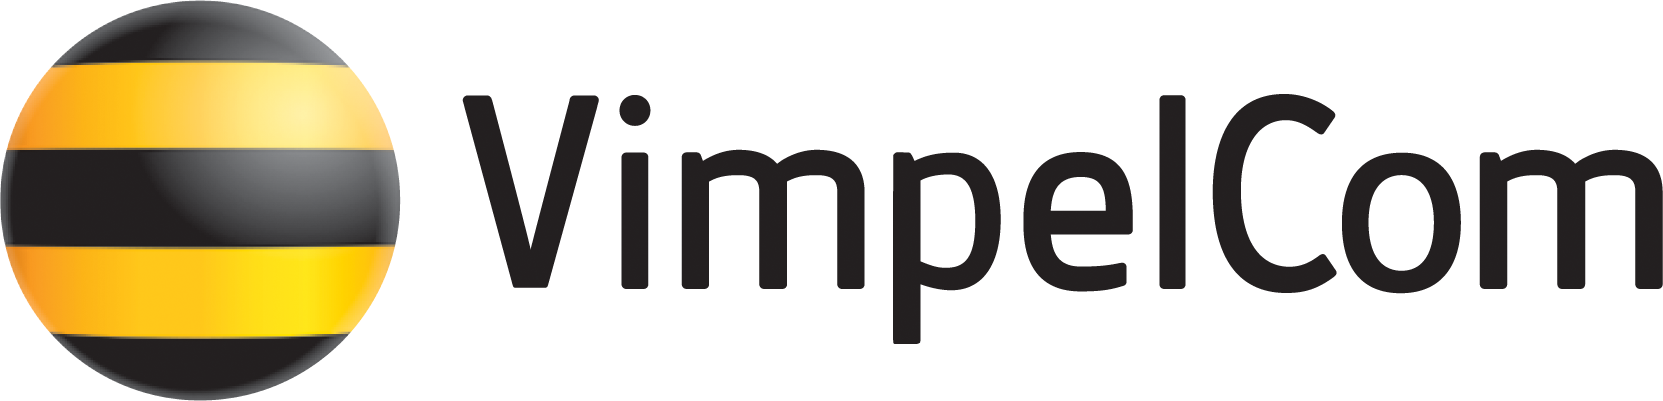 Vimpelcom_logo.png